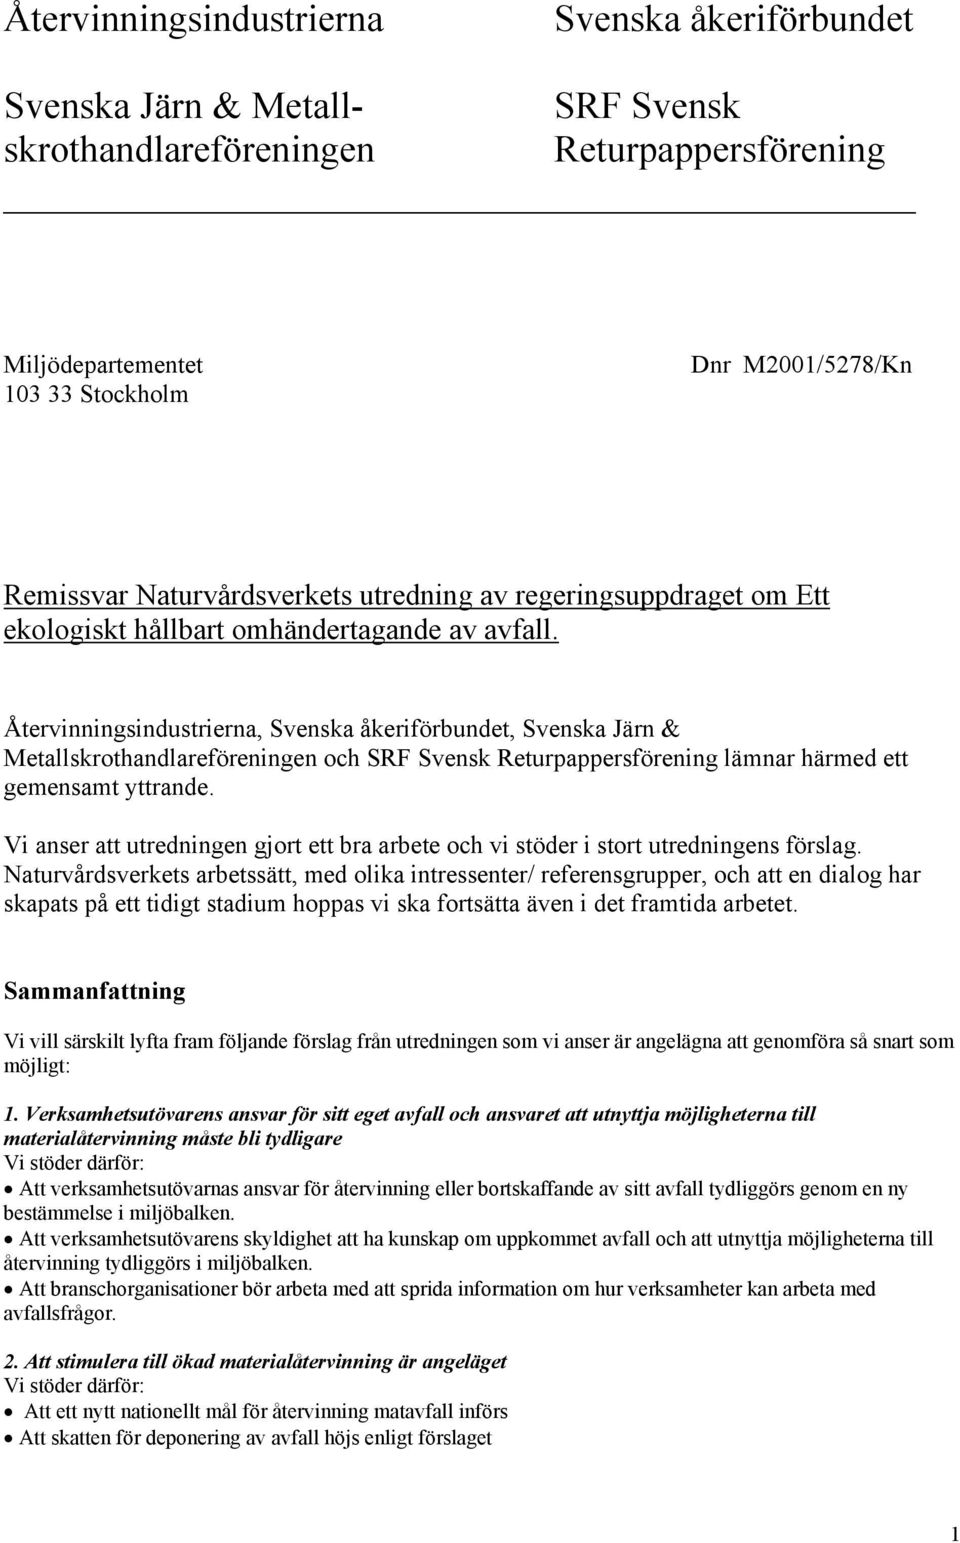 Återvinningsindustrierna, Svenska åkeriförbundet, Svenska Järn & Metallskrothandlareföreningen och SRF Svensk Returpappersförening lämnar härmed ett gemensamt yttrande.